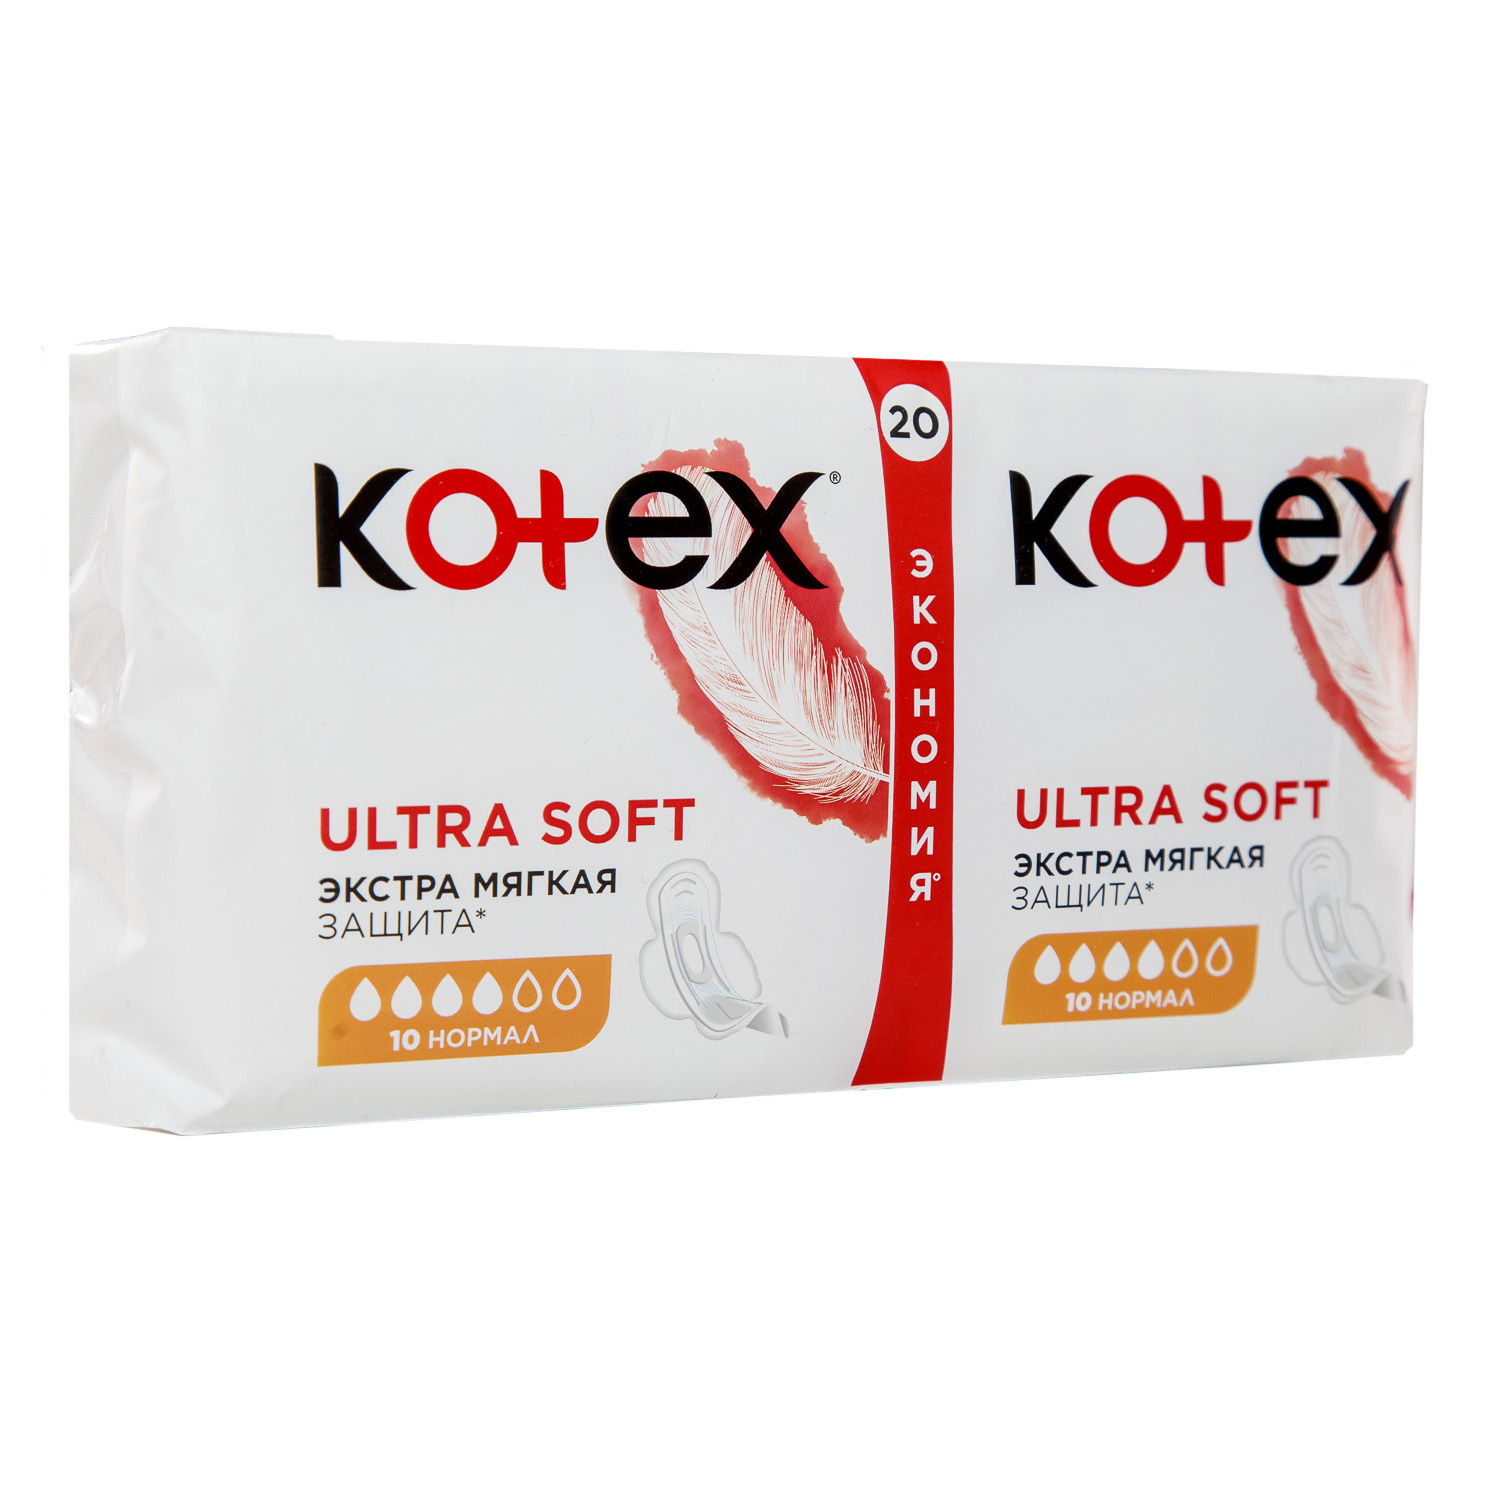 Kotex Прокладки Софт Нормал, 20 шт. фото